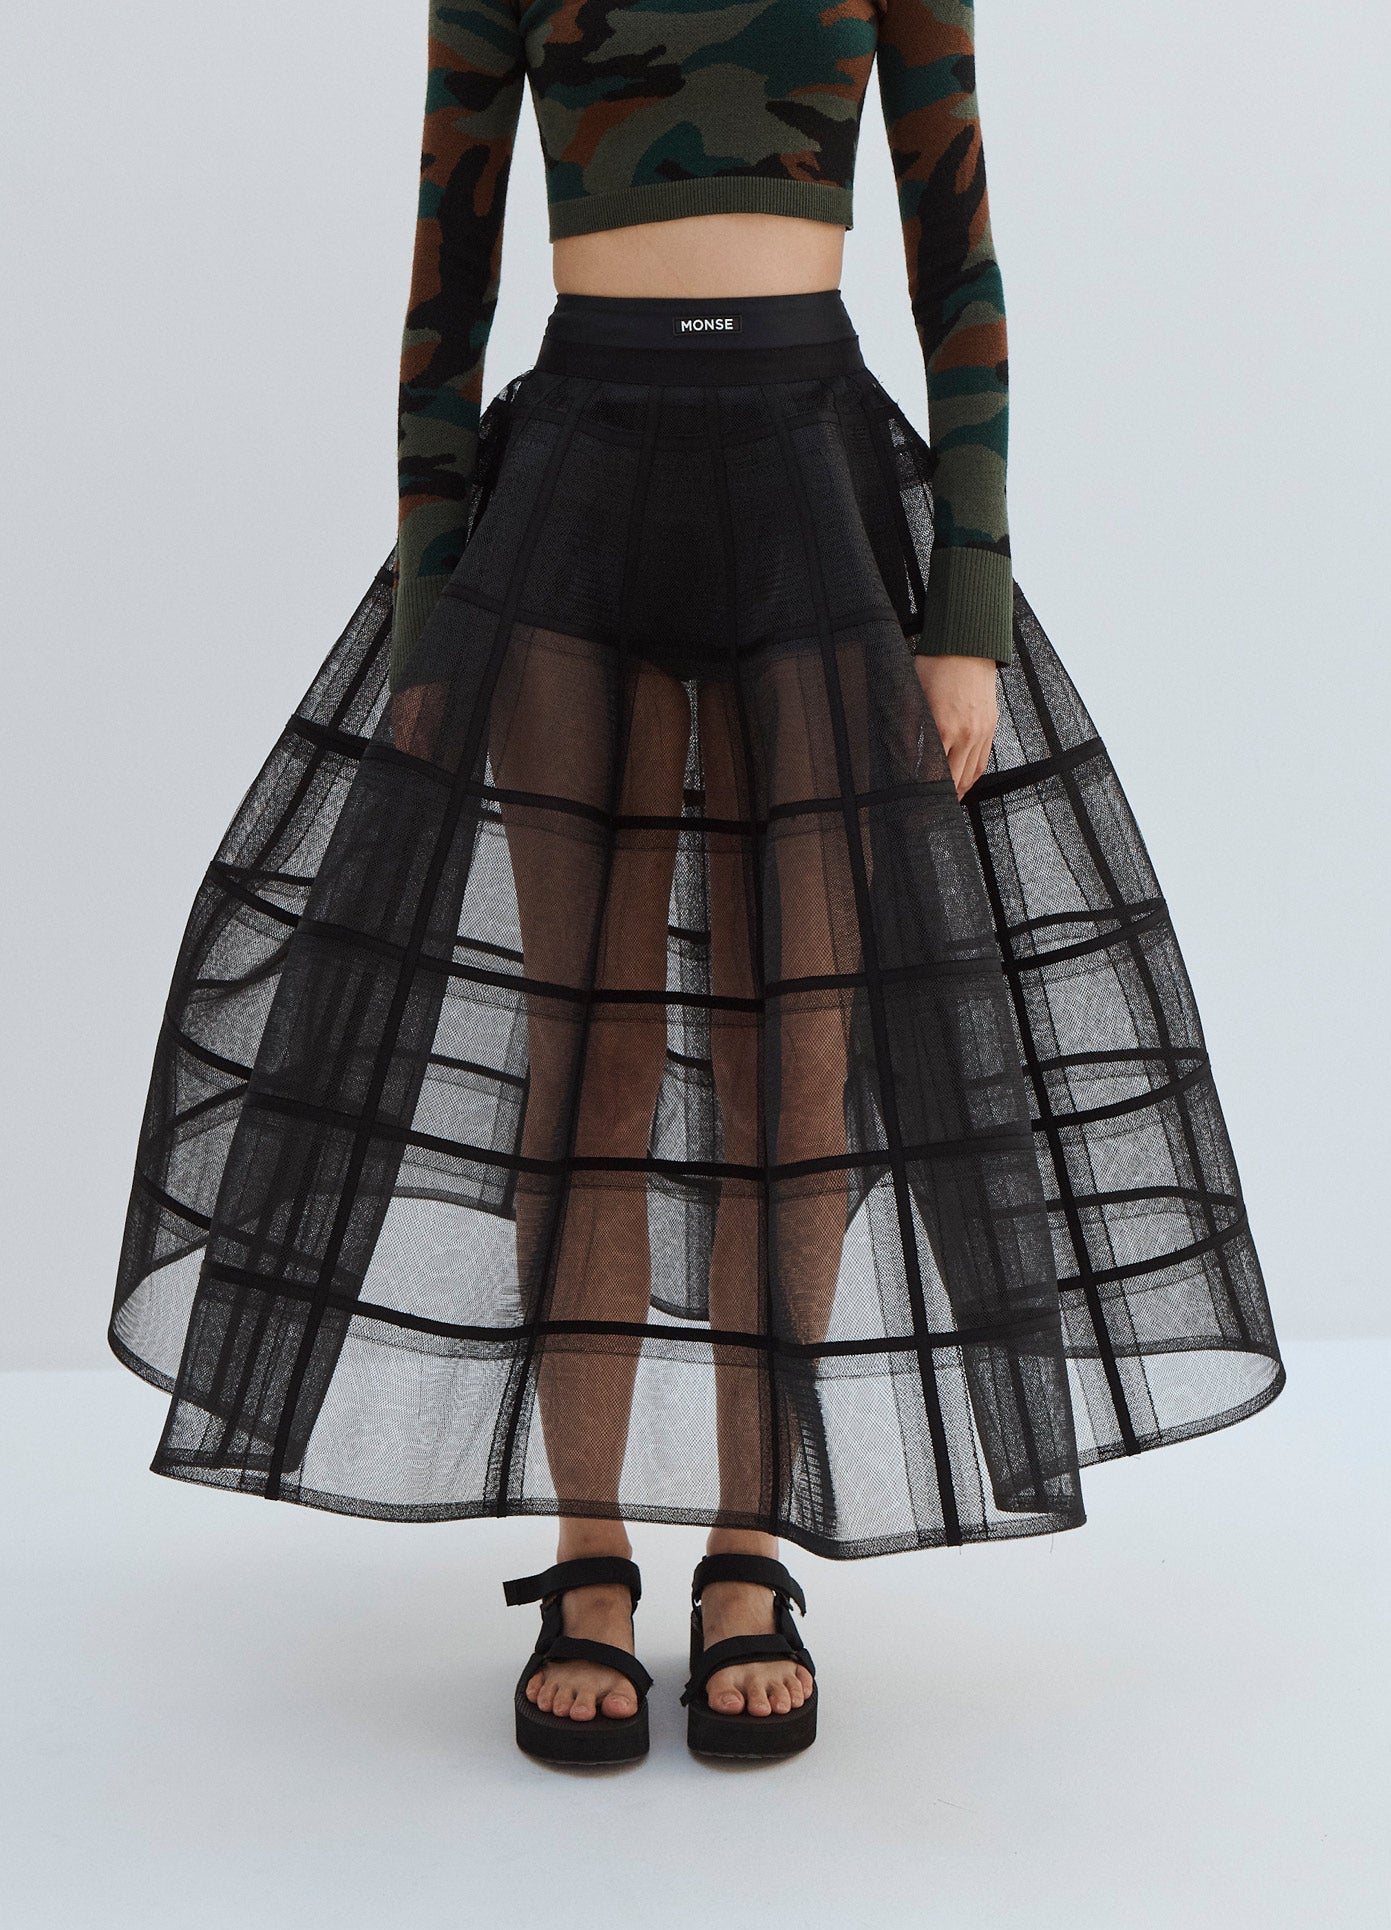 MONSE Long Crinoline Petticoat in Black on Model Skirt Detail View